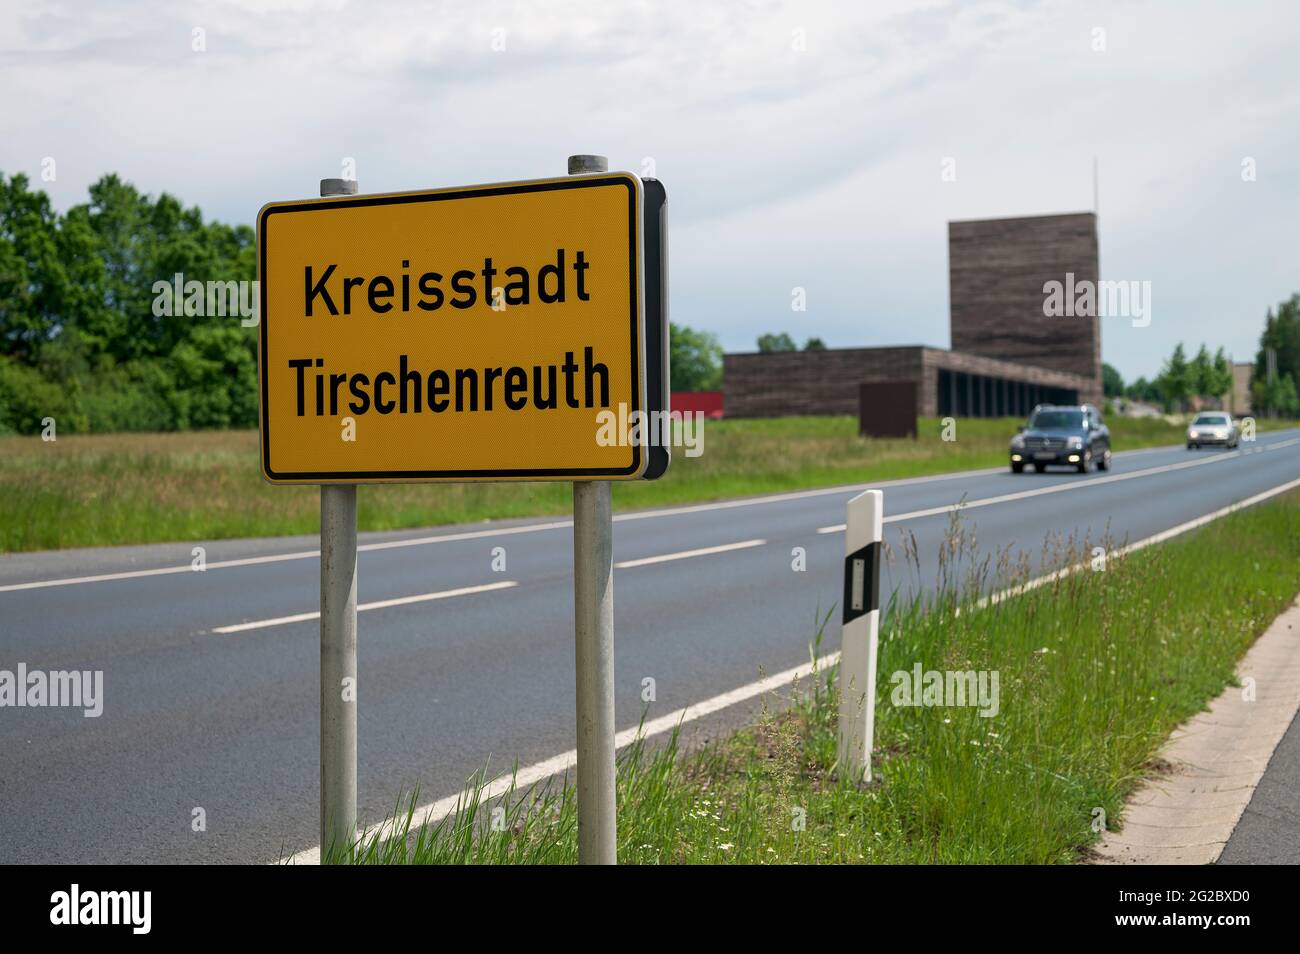 10 de junio de 2021, Baviera, Tirschenreuth: Vista de la ciudad signo Tirschenreuth. Los vehículos se pueden ver en el fondo. En Tirschenreuth, la incidencia de corona es de 1. No se ha reportado ninguna nueva infección durante 7 días. Foto: Daniel Vogl/dpa Foto de stock